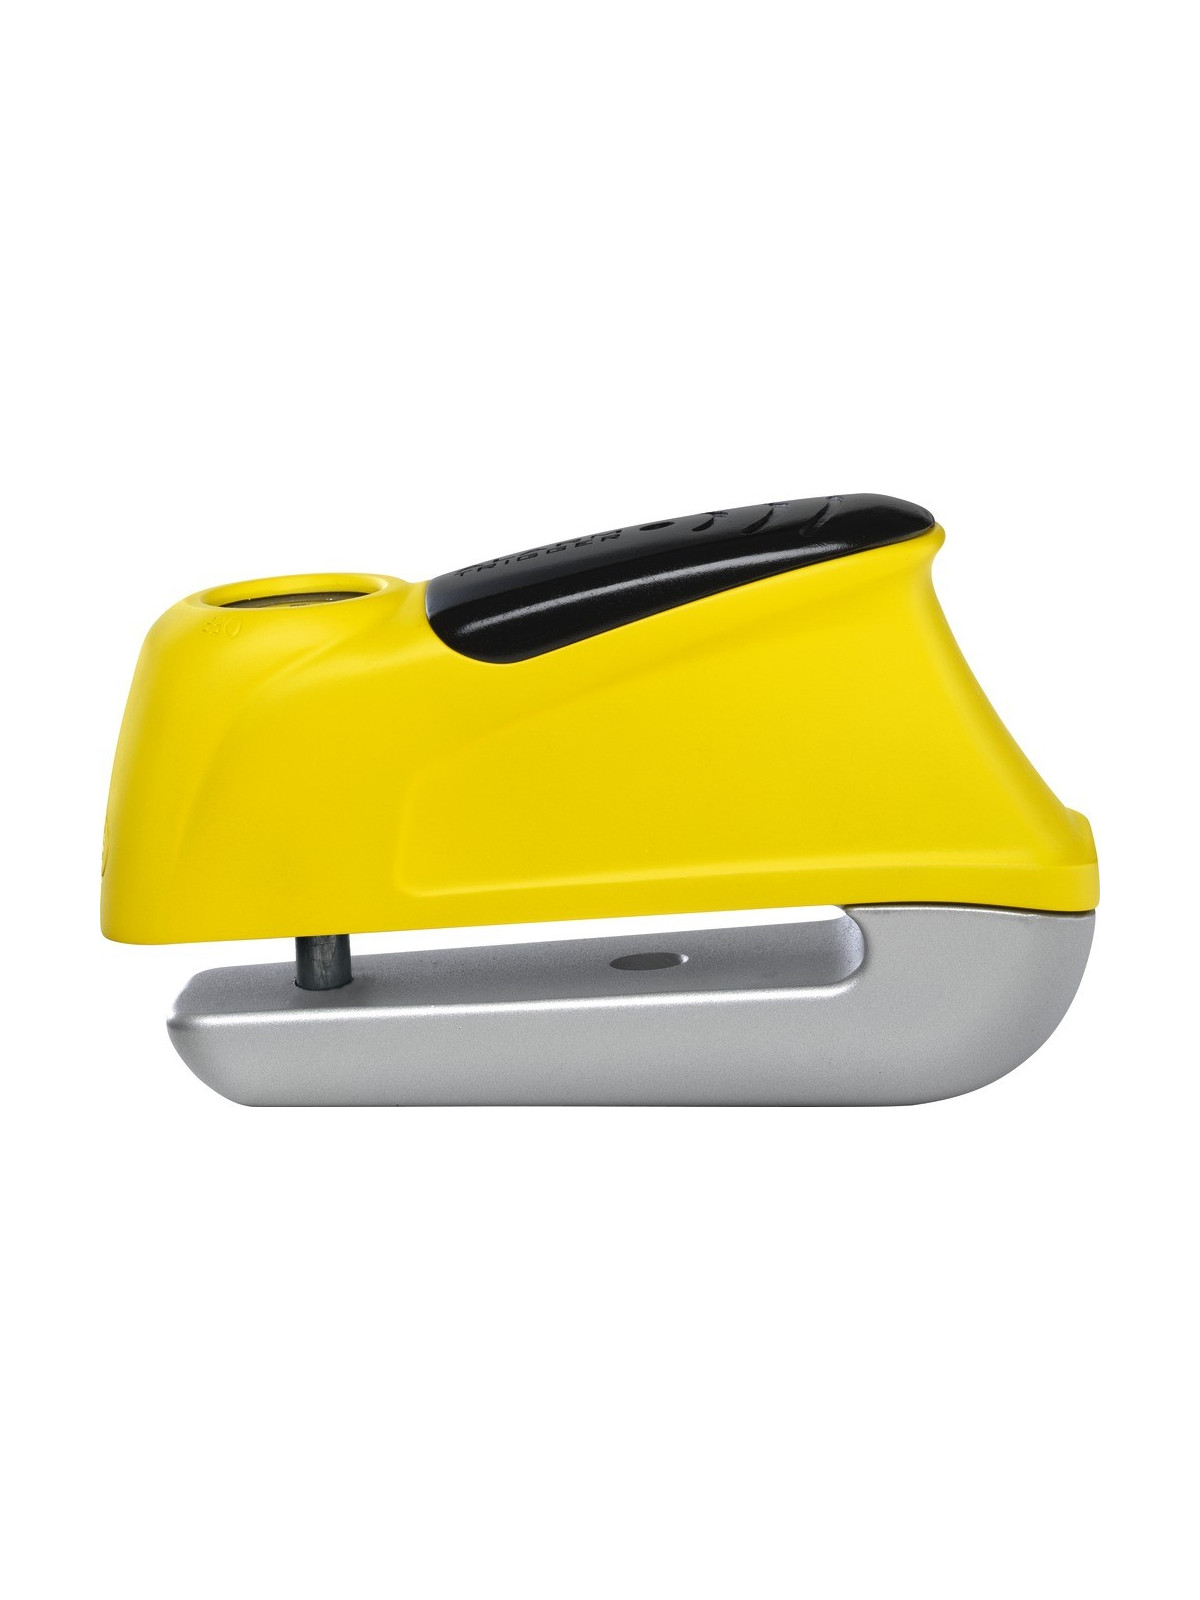 Bloque disque ABUS Trigger Alarm 345 jaune